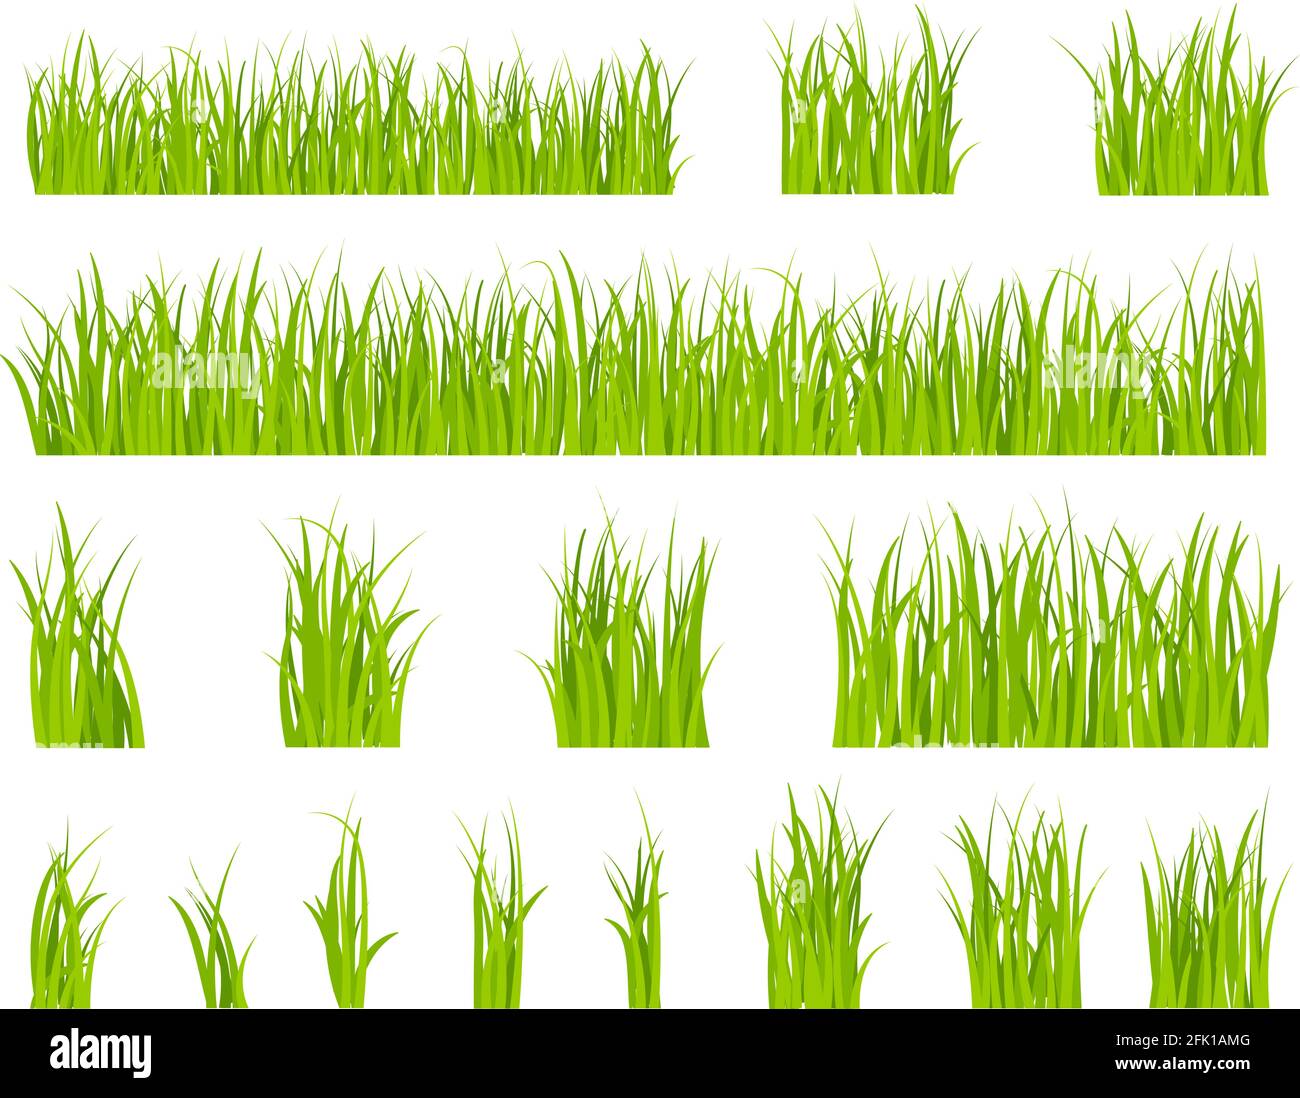 Grünes Gras. Bio-Rasen-Muster, Kräuter Sommer Grenze. Isolierte Felder, Frühling Saison horizontale Gartenelemente. Vektorset für organische Pflanzen Stock Vektor